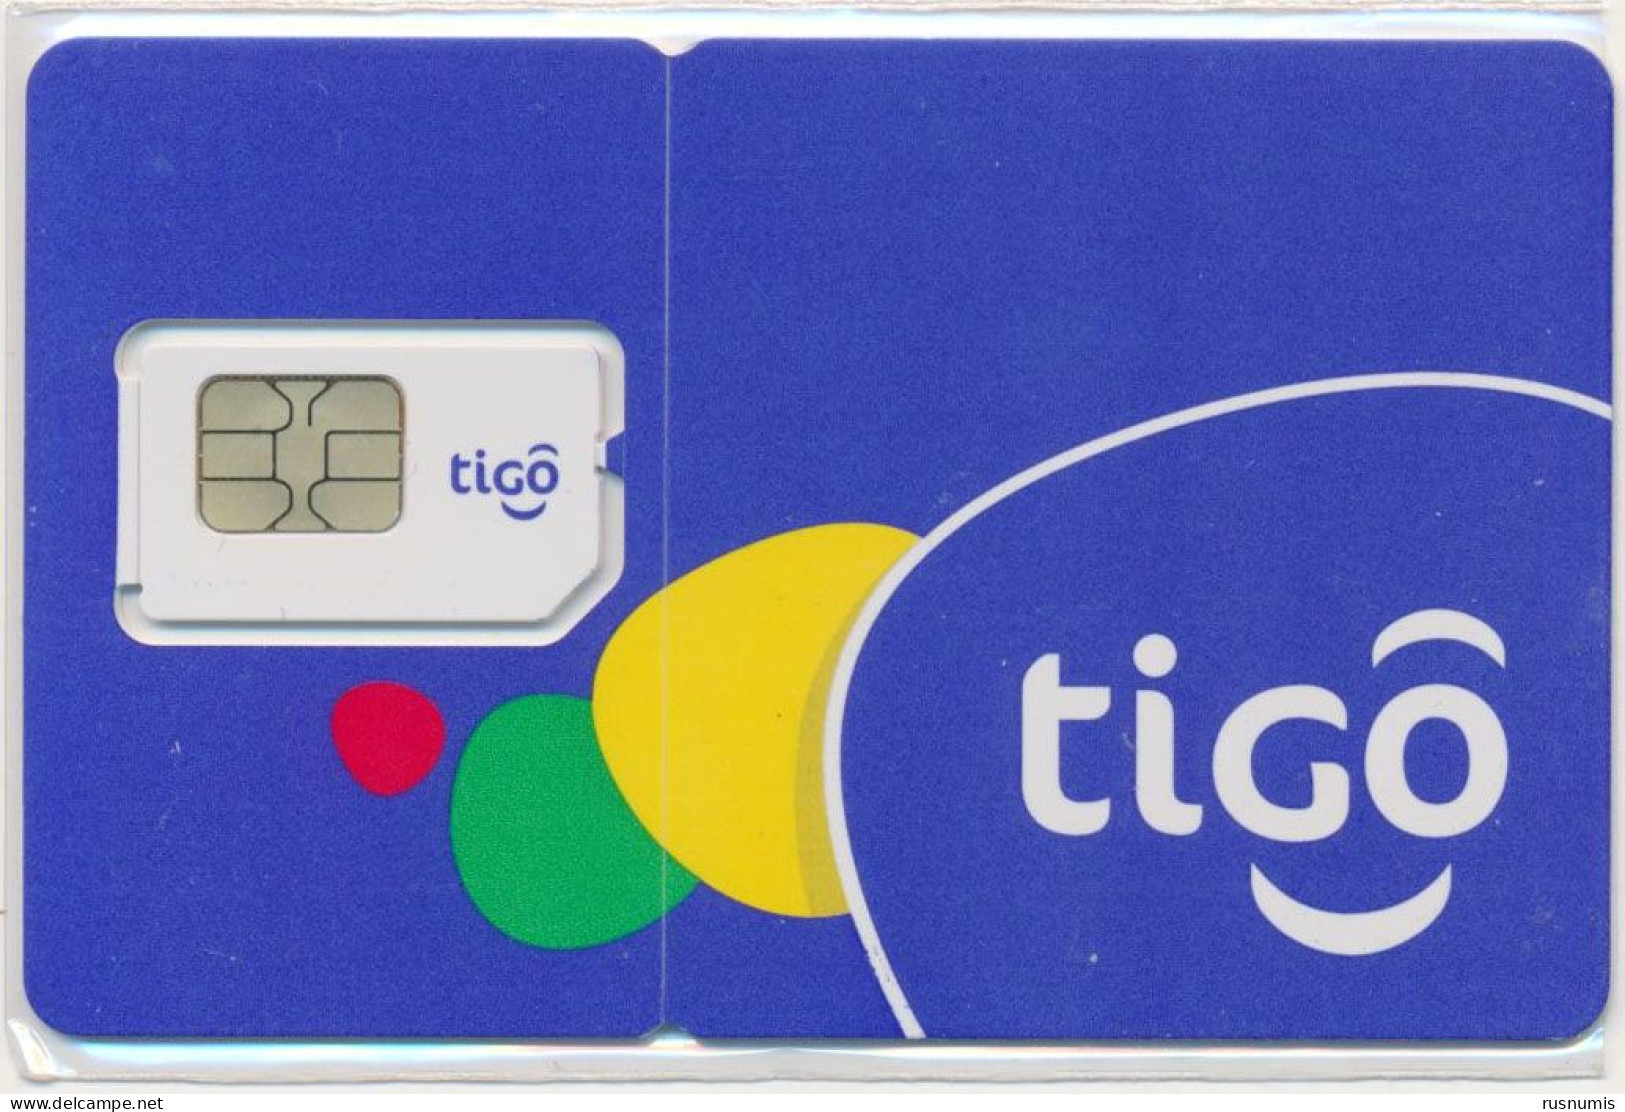 EL SALVADOR TIGO GSM (SIM) CARD MINT UNUSED - El Salvador